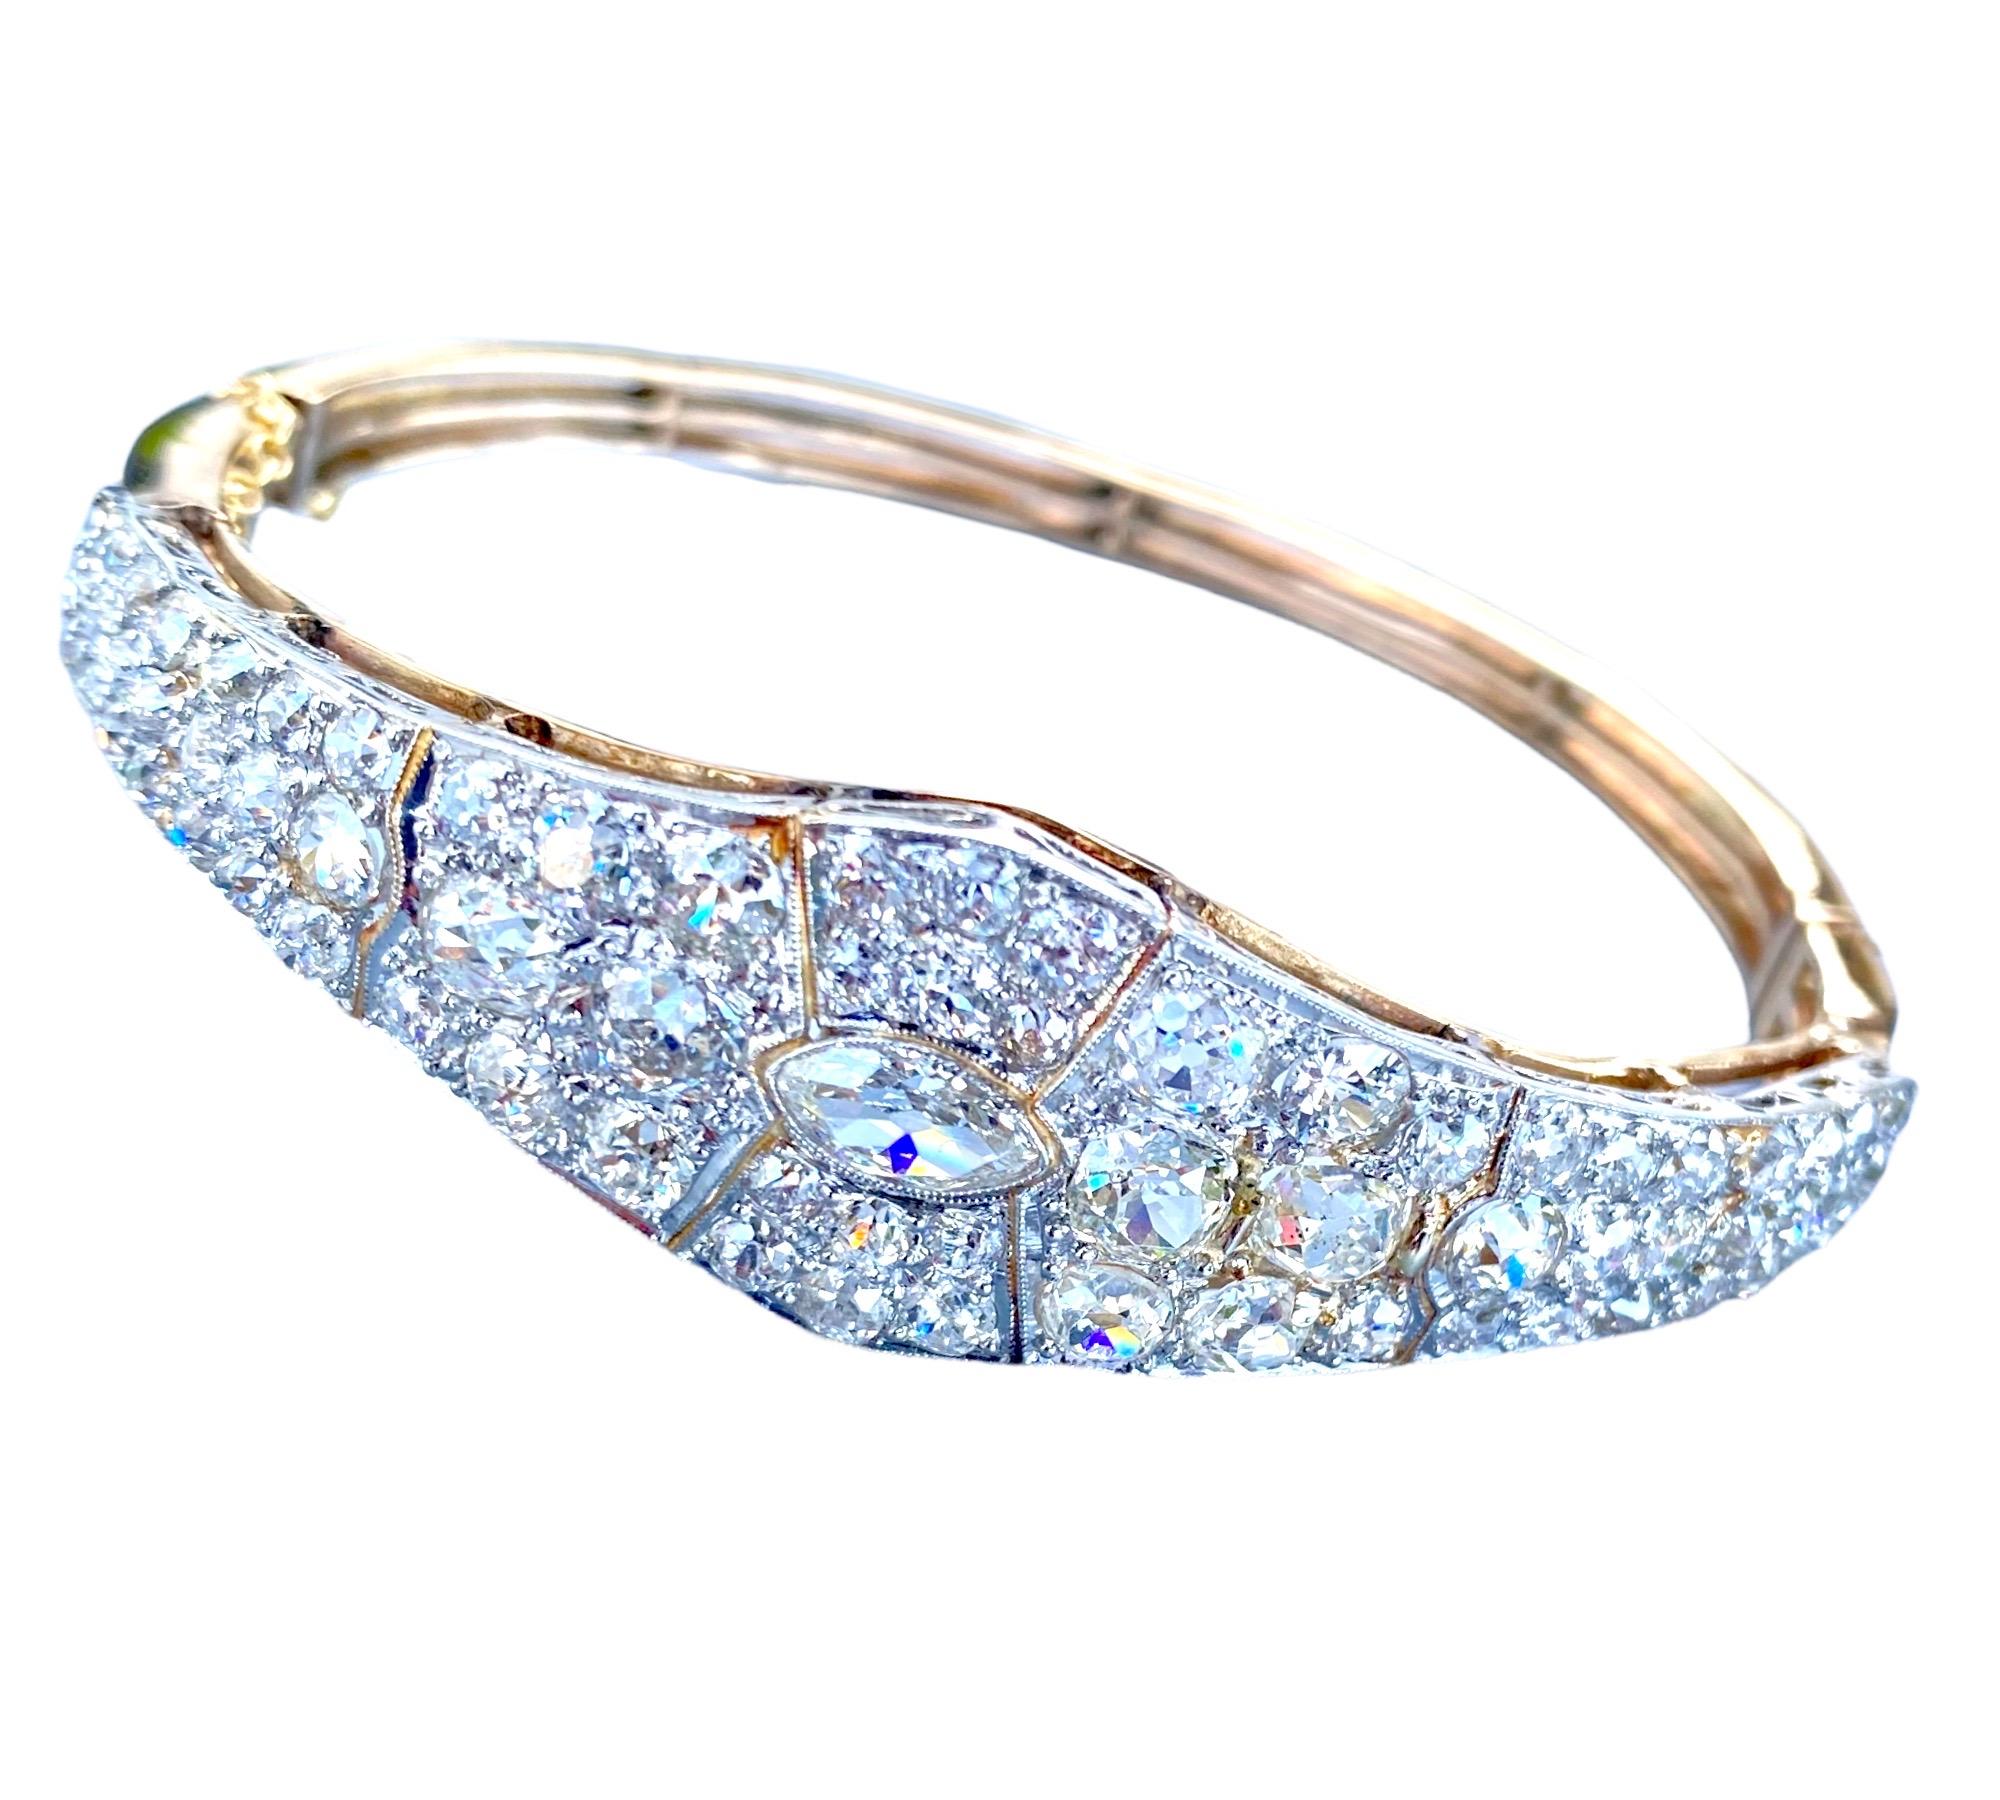 Bracelet pavé de diamants incrustés en platine. La base et le dos du bracelet sont tous fabriqués en  Or de couleur jaune.
Exceptionnel plateau en pavé de diamants de taille européenne serti en platine. 
La qualité des diamants est de pureté VS et